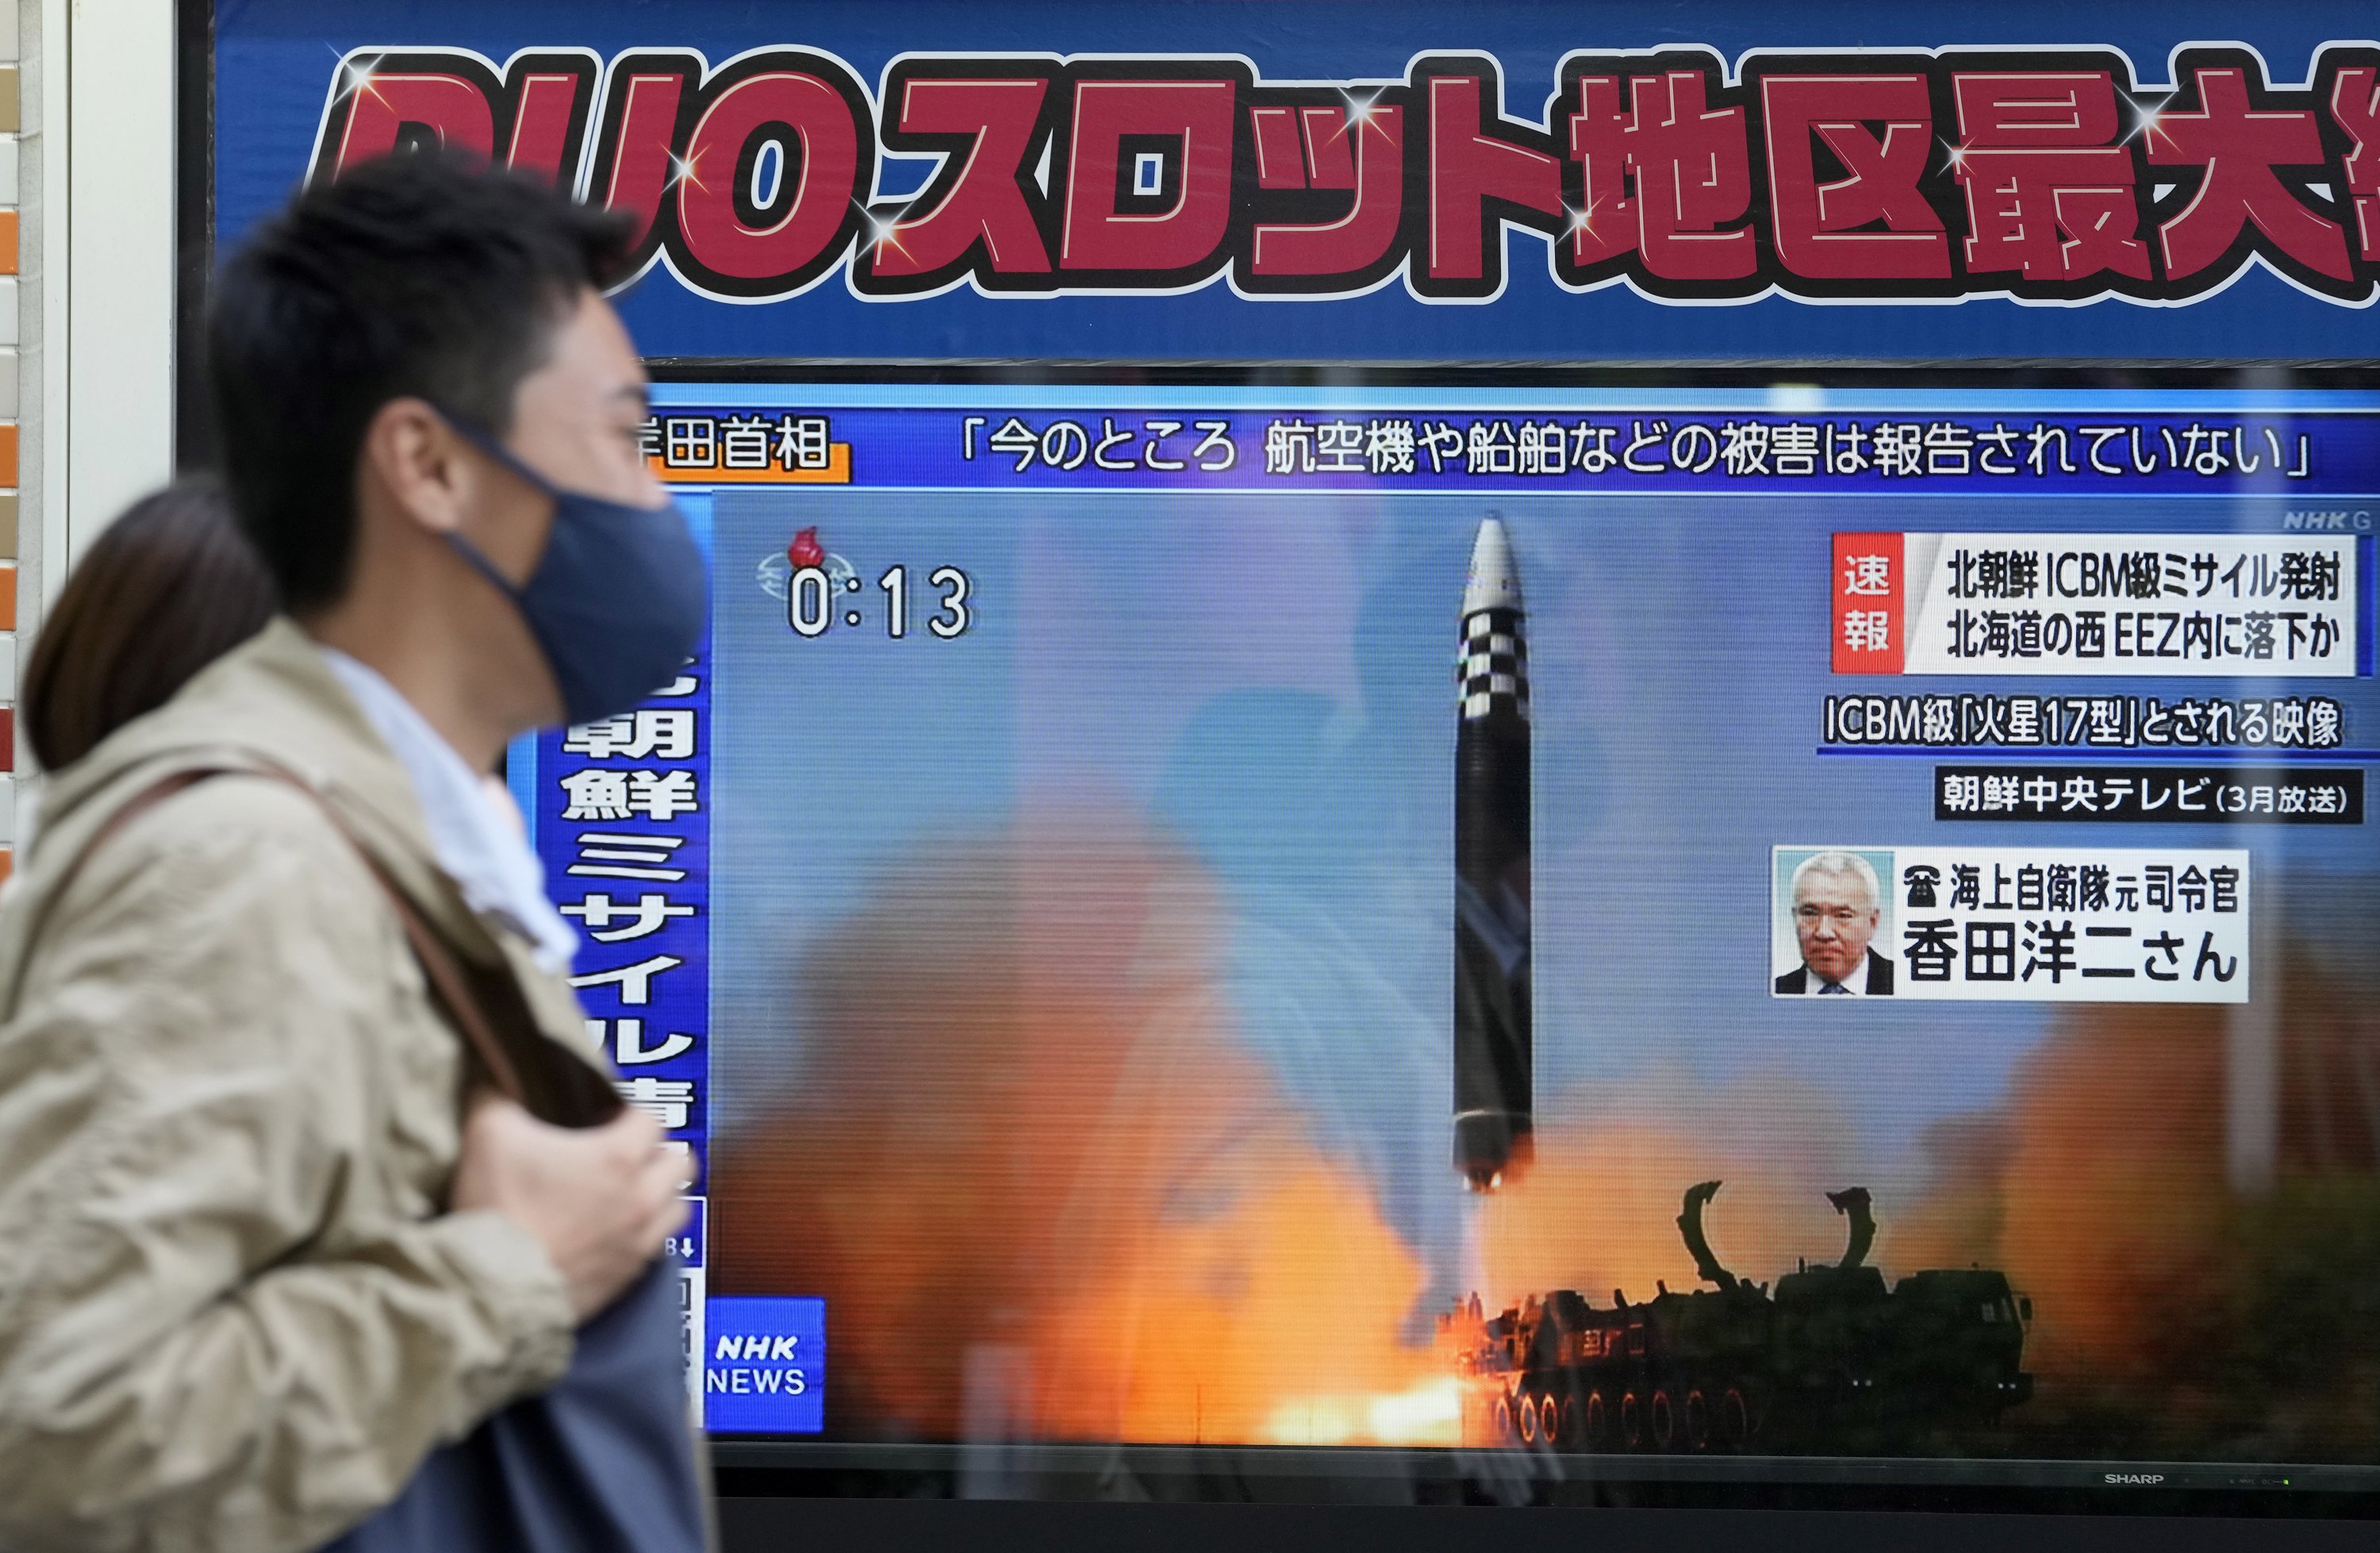 Nou atac de Corea del Nord: Pyongyang dispara un míssil a aigües japoneses